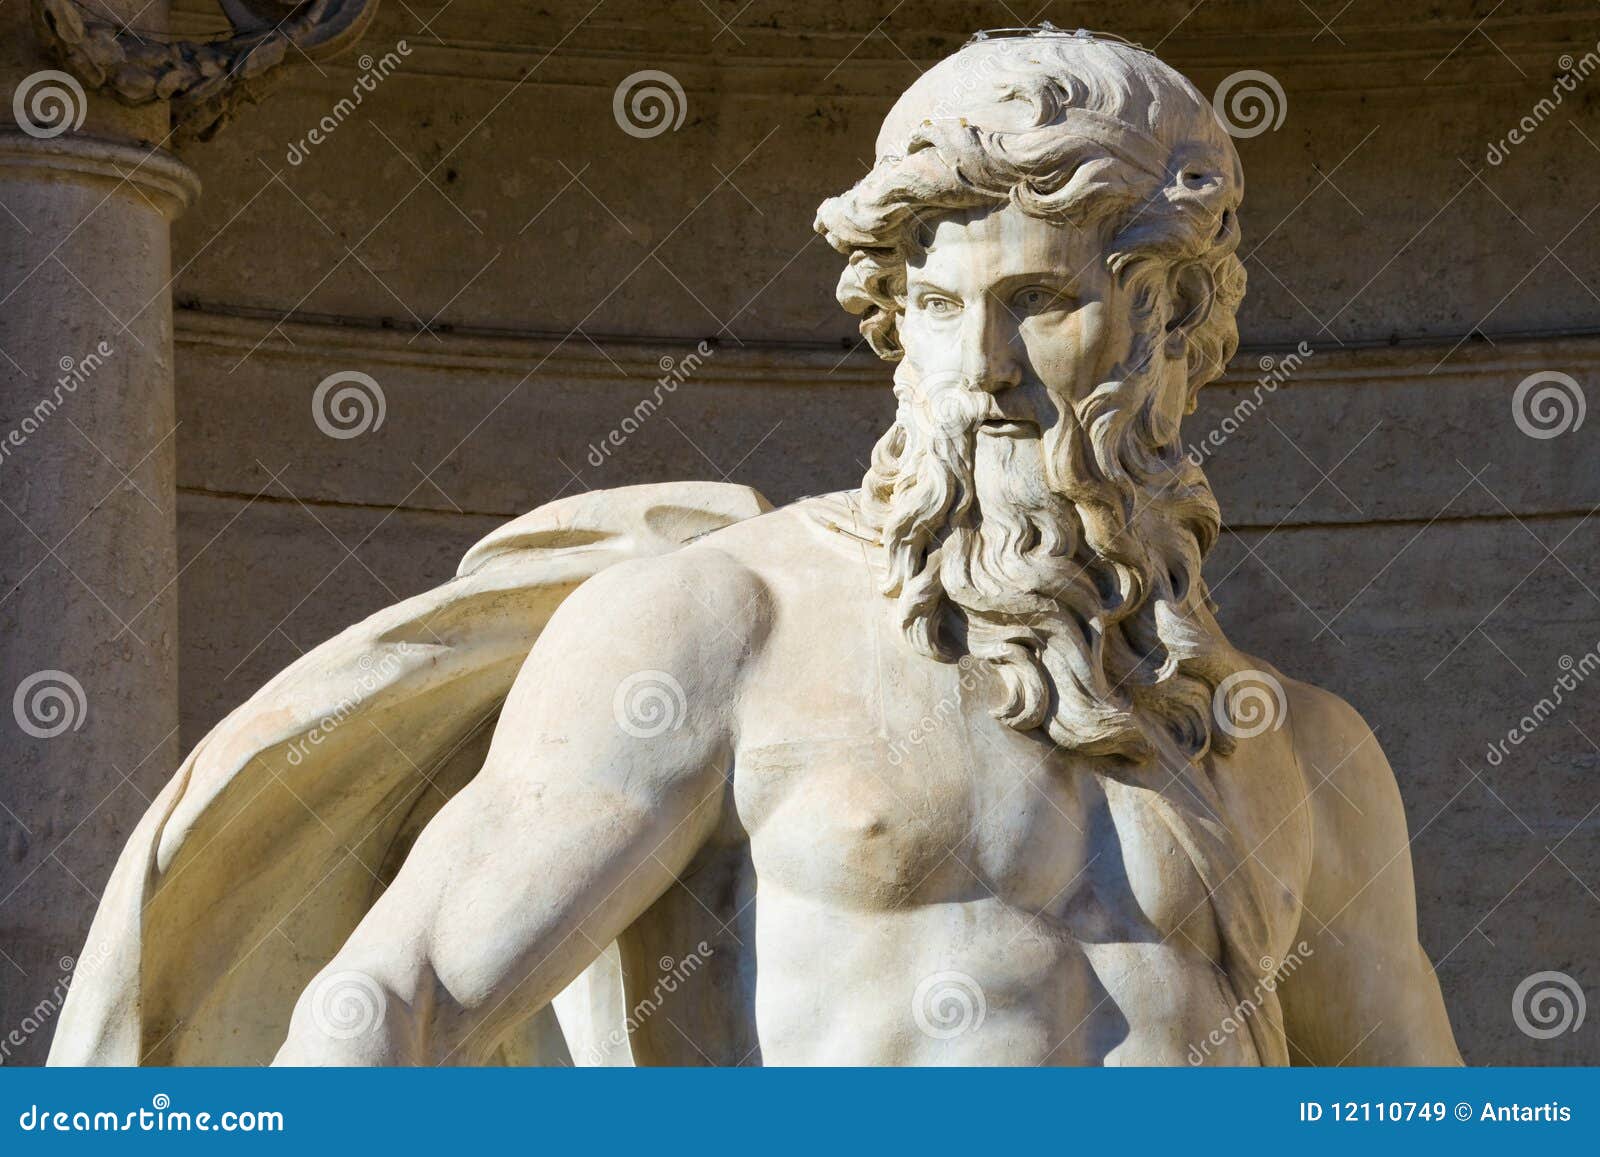 neptune statue in rome